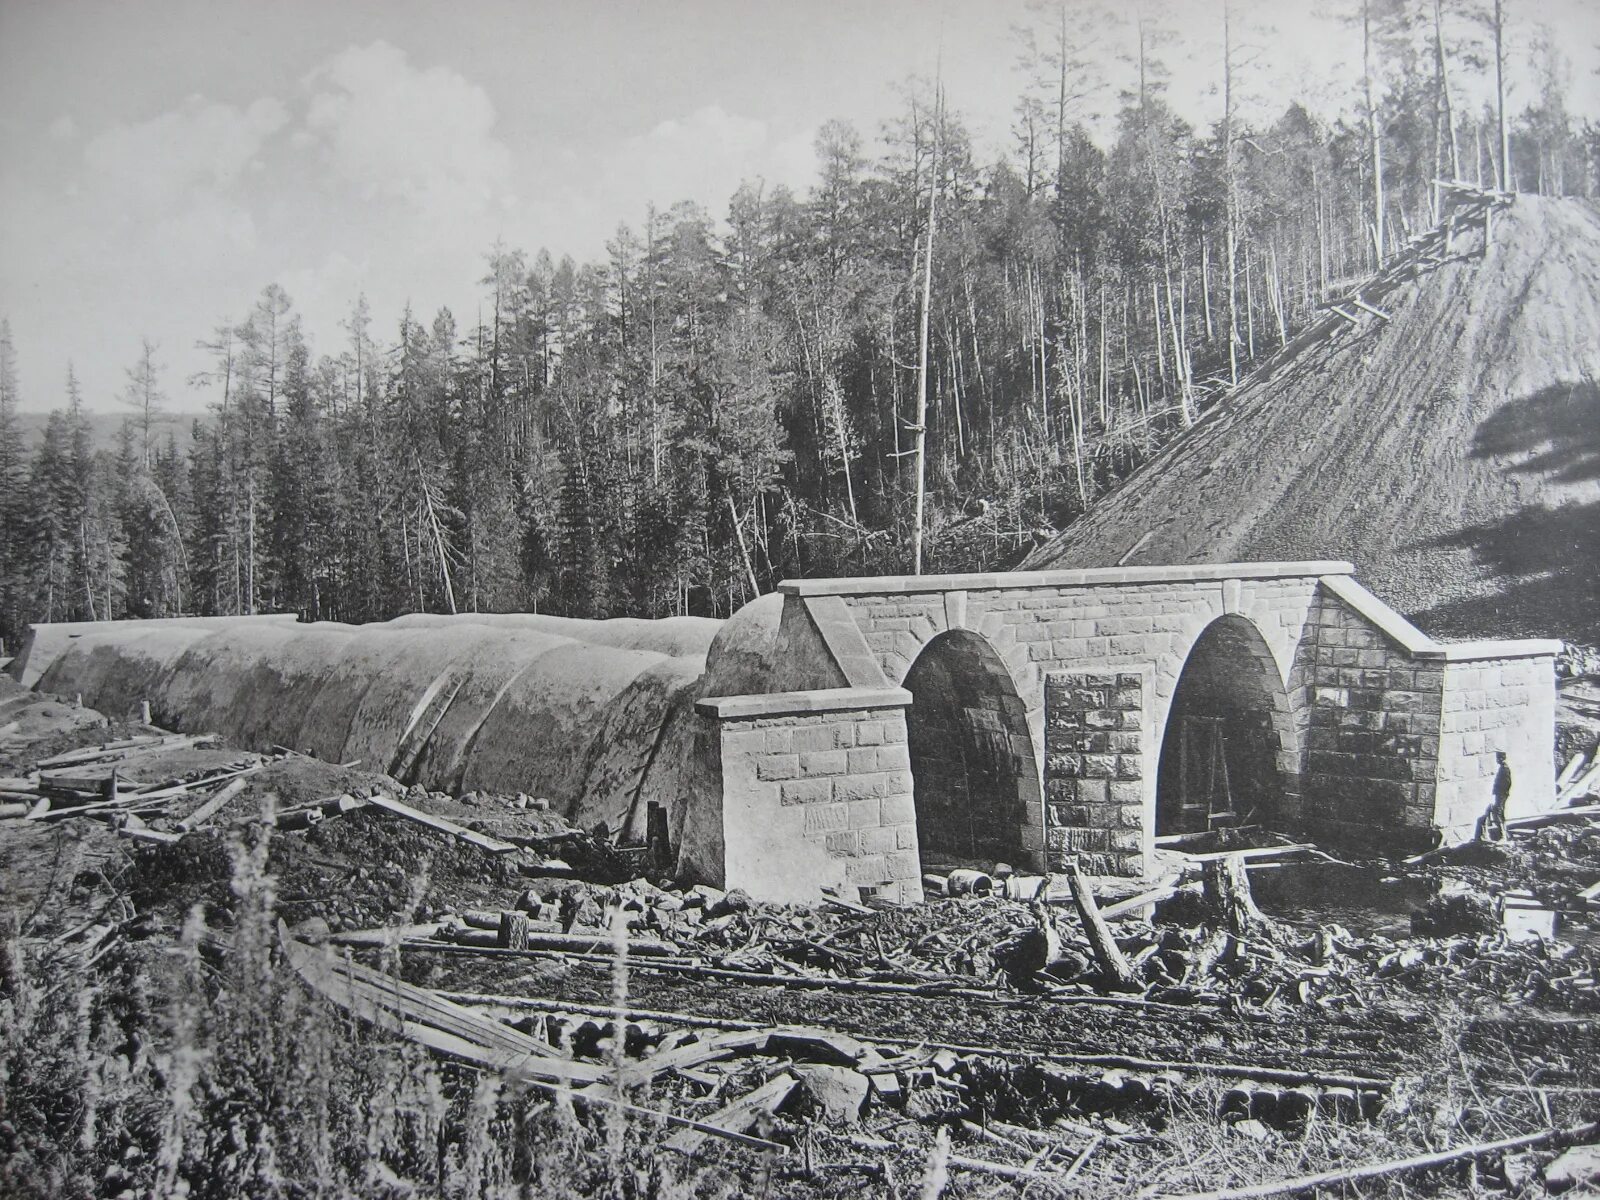 Строительство железной дороги 19 век